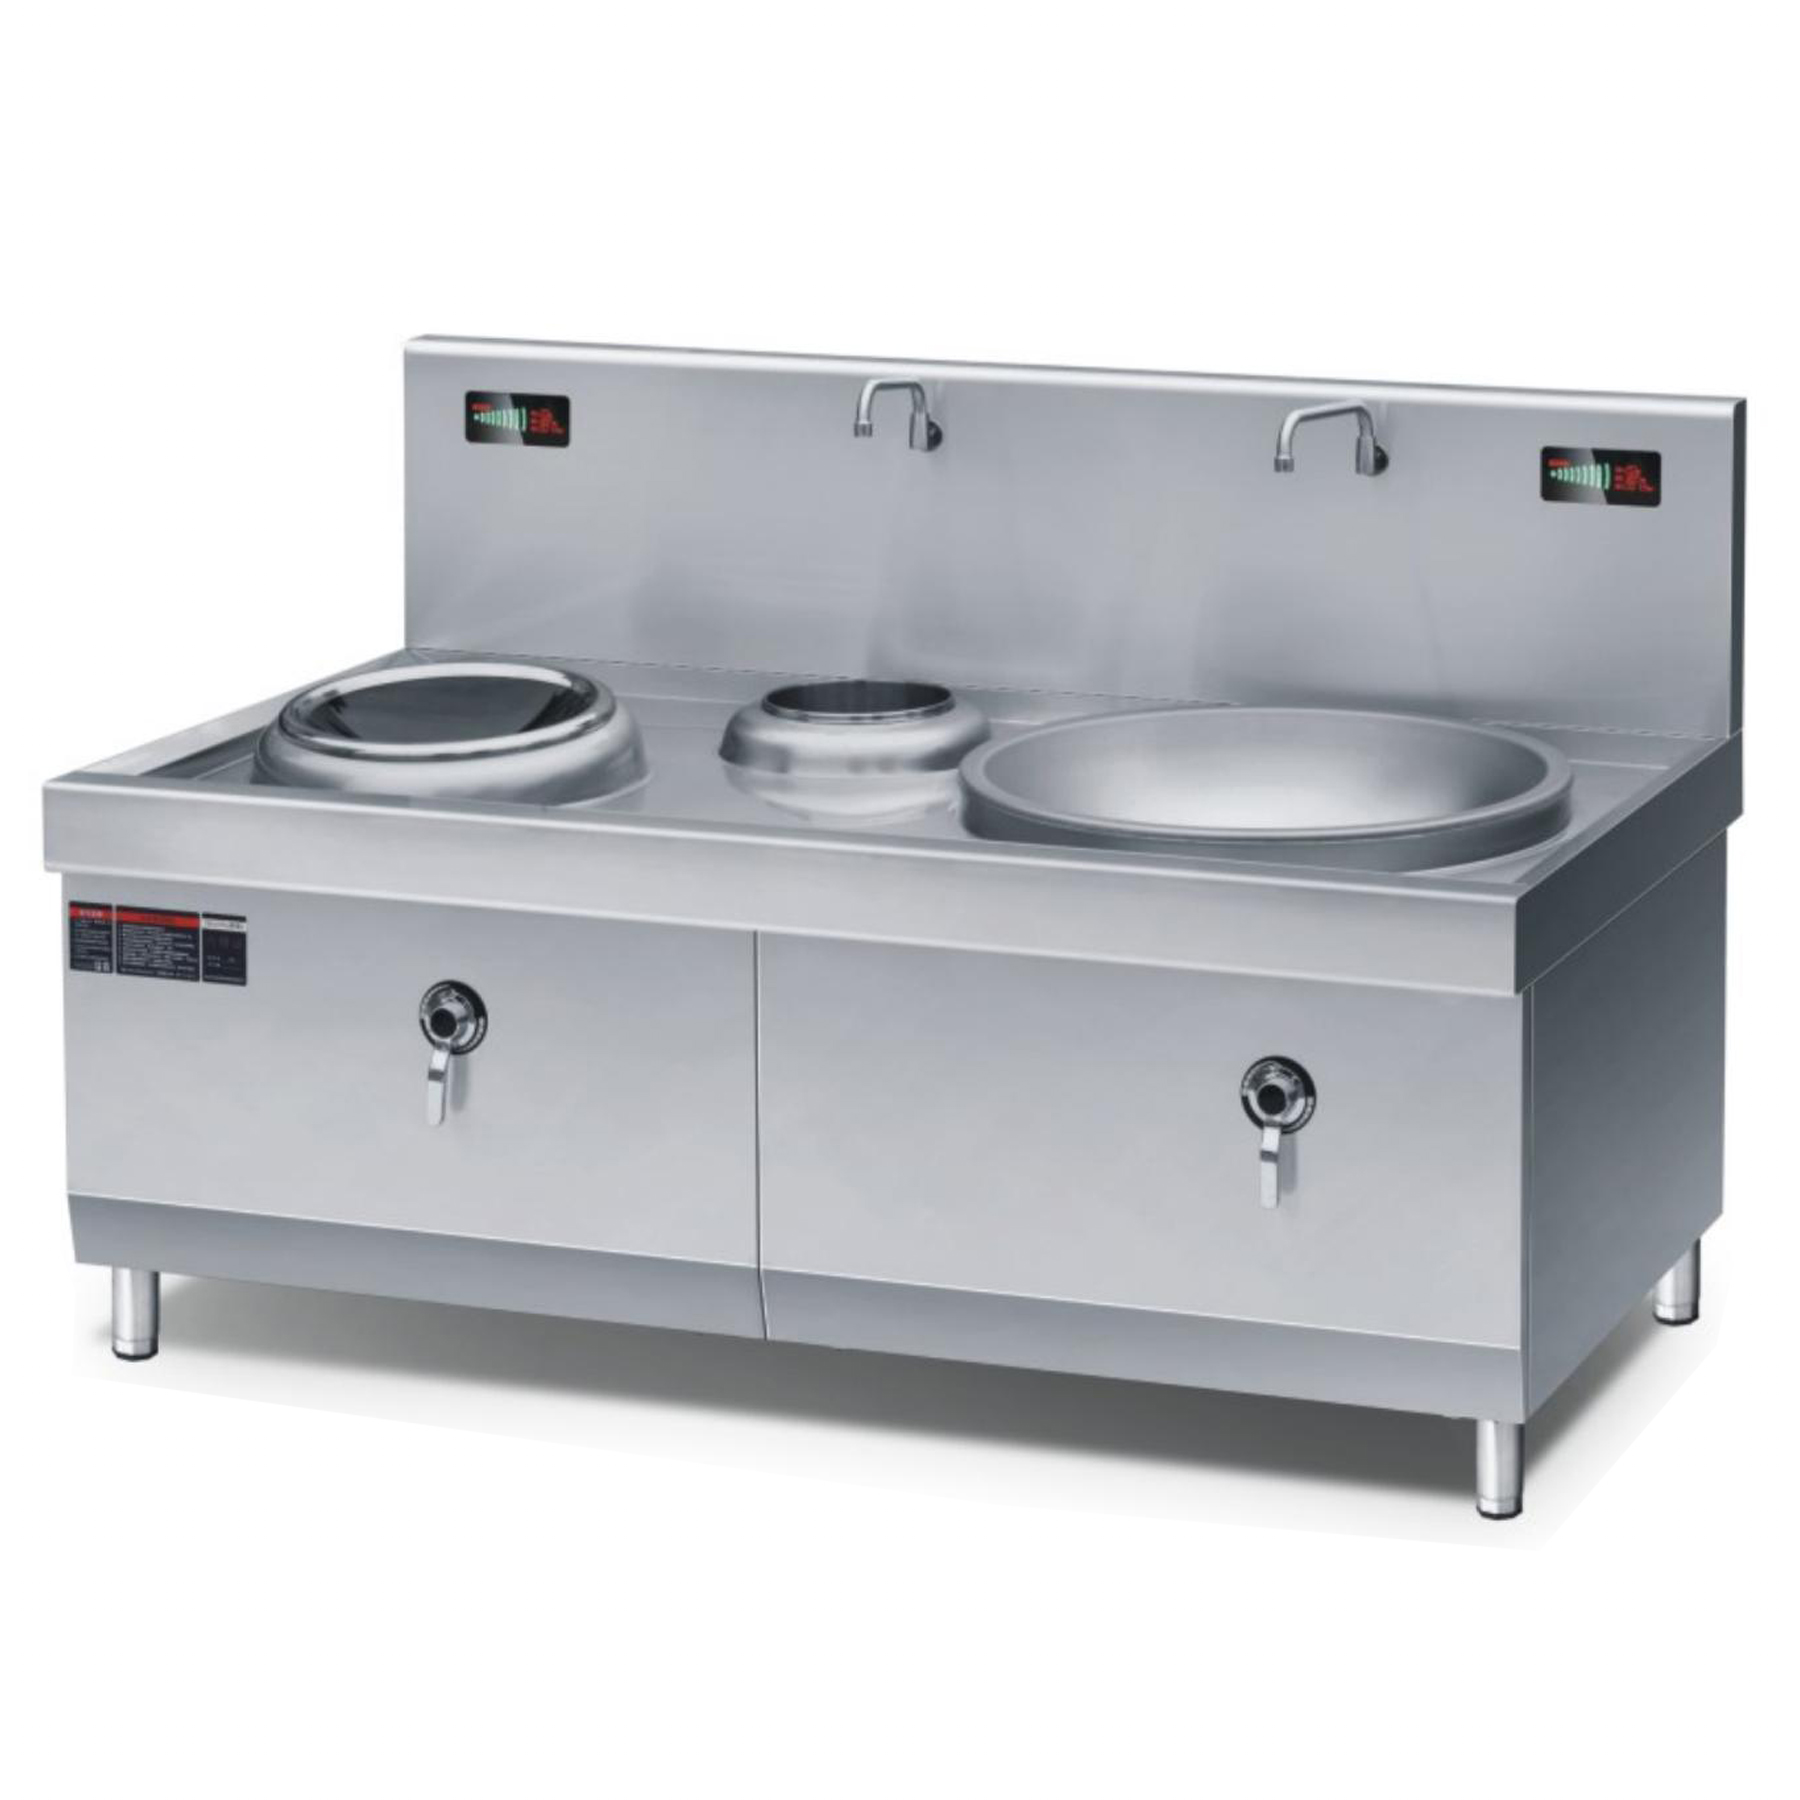 厨房设备工程中一体化环保炉灶与传统炉灶的差异